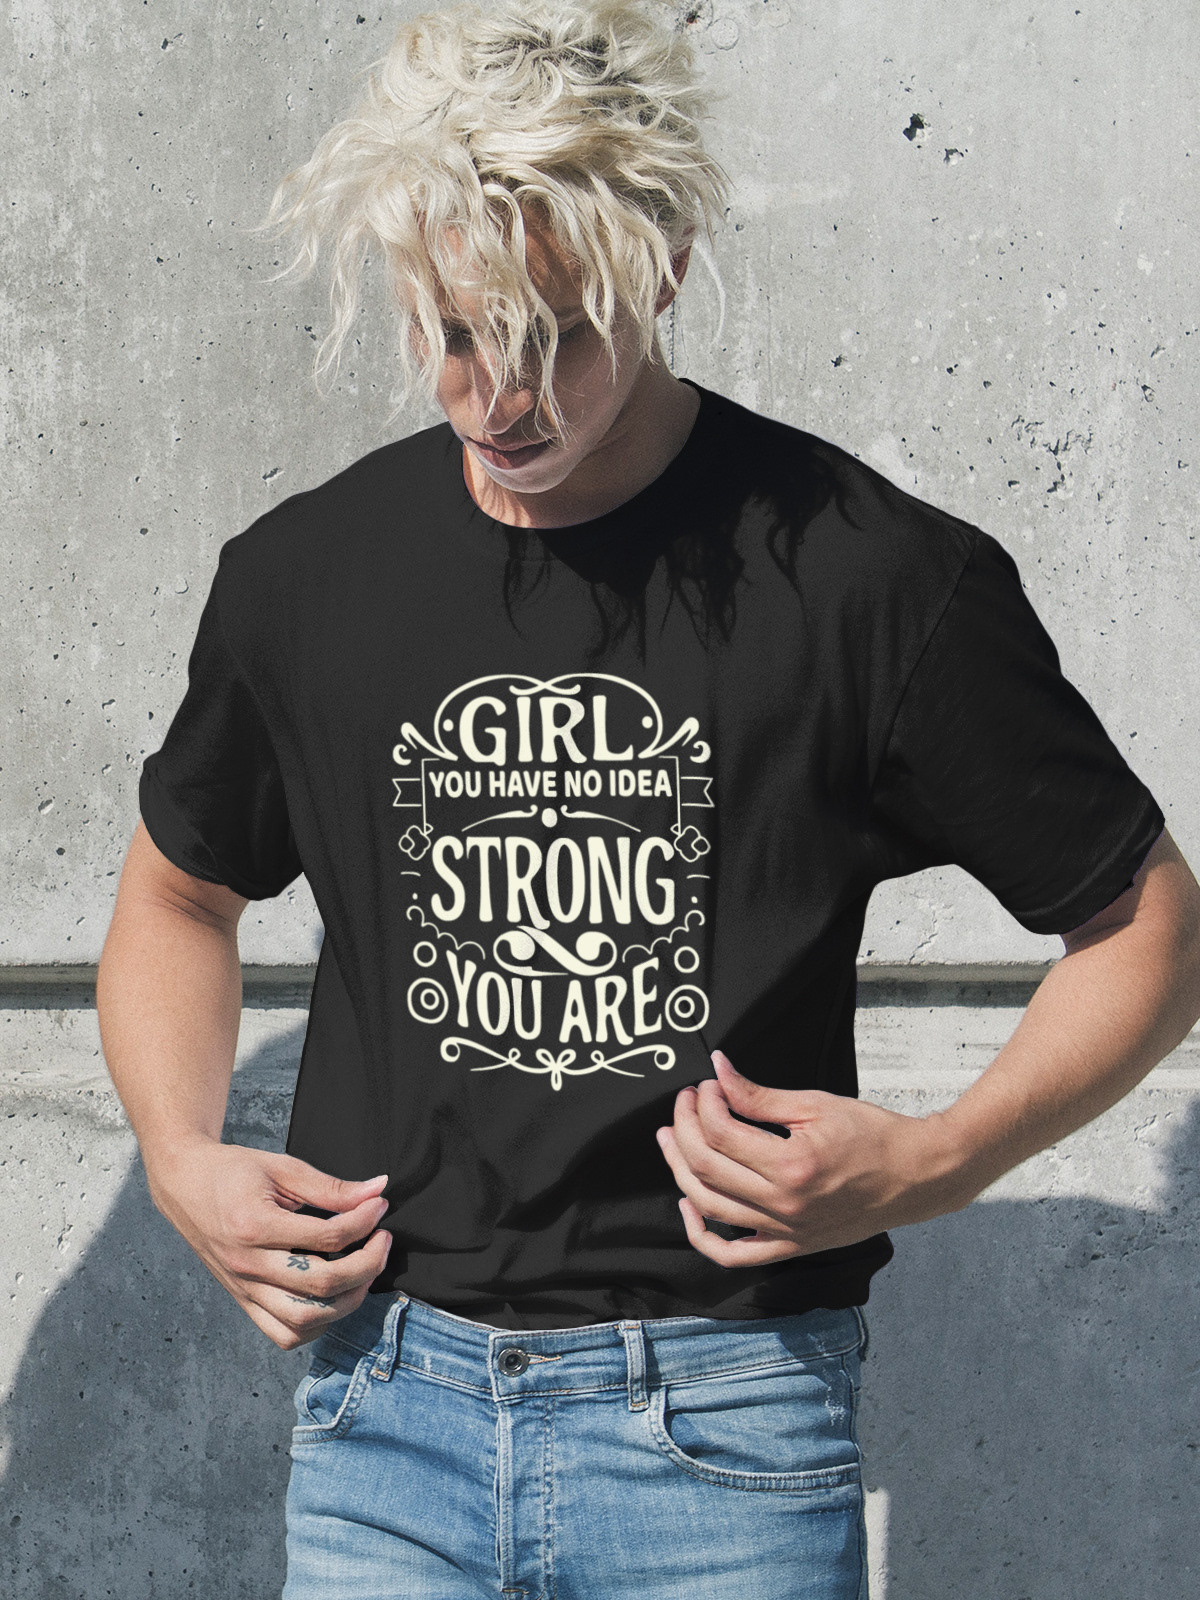 Women's Day T Shirt Design